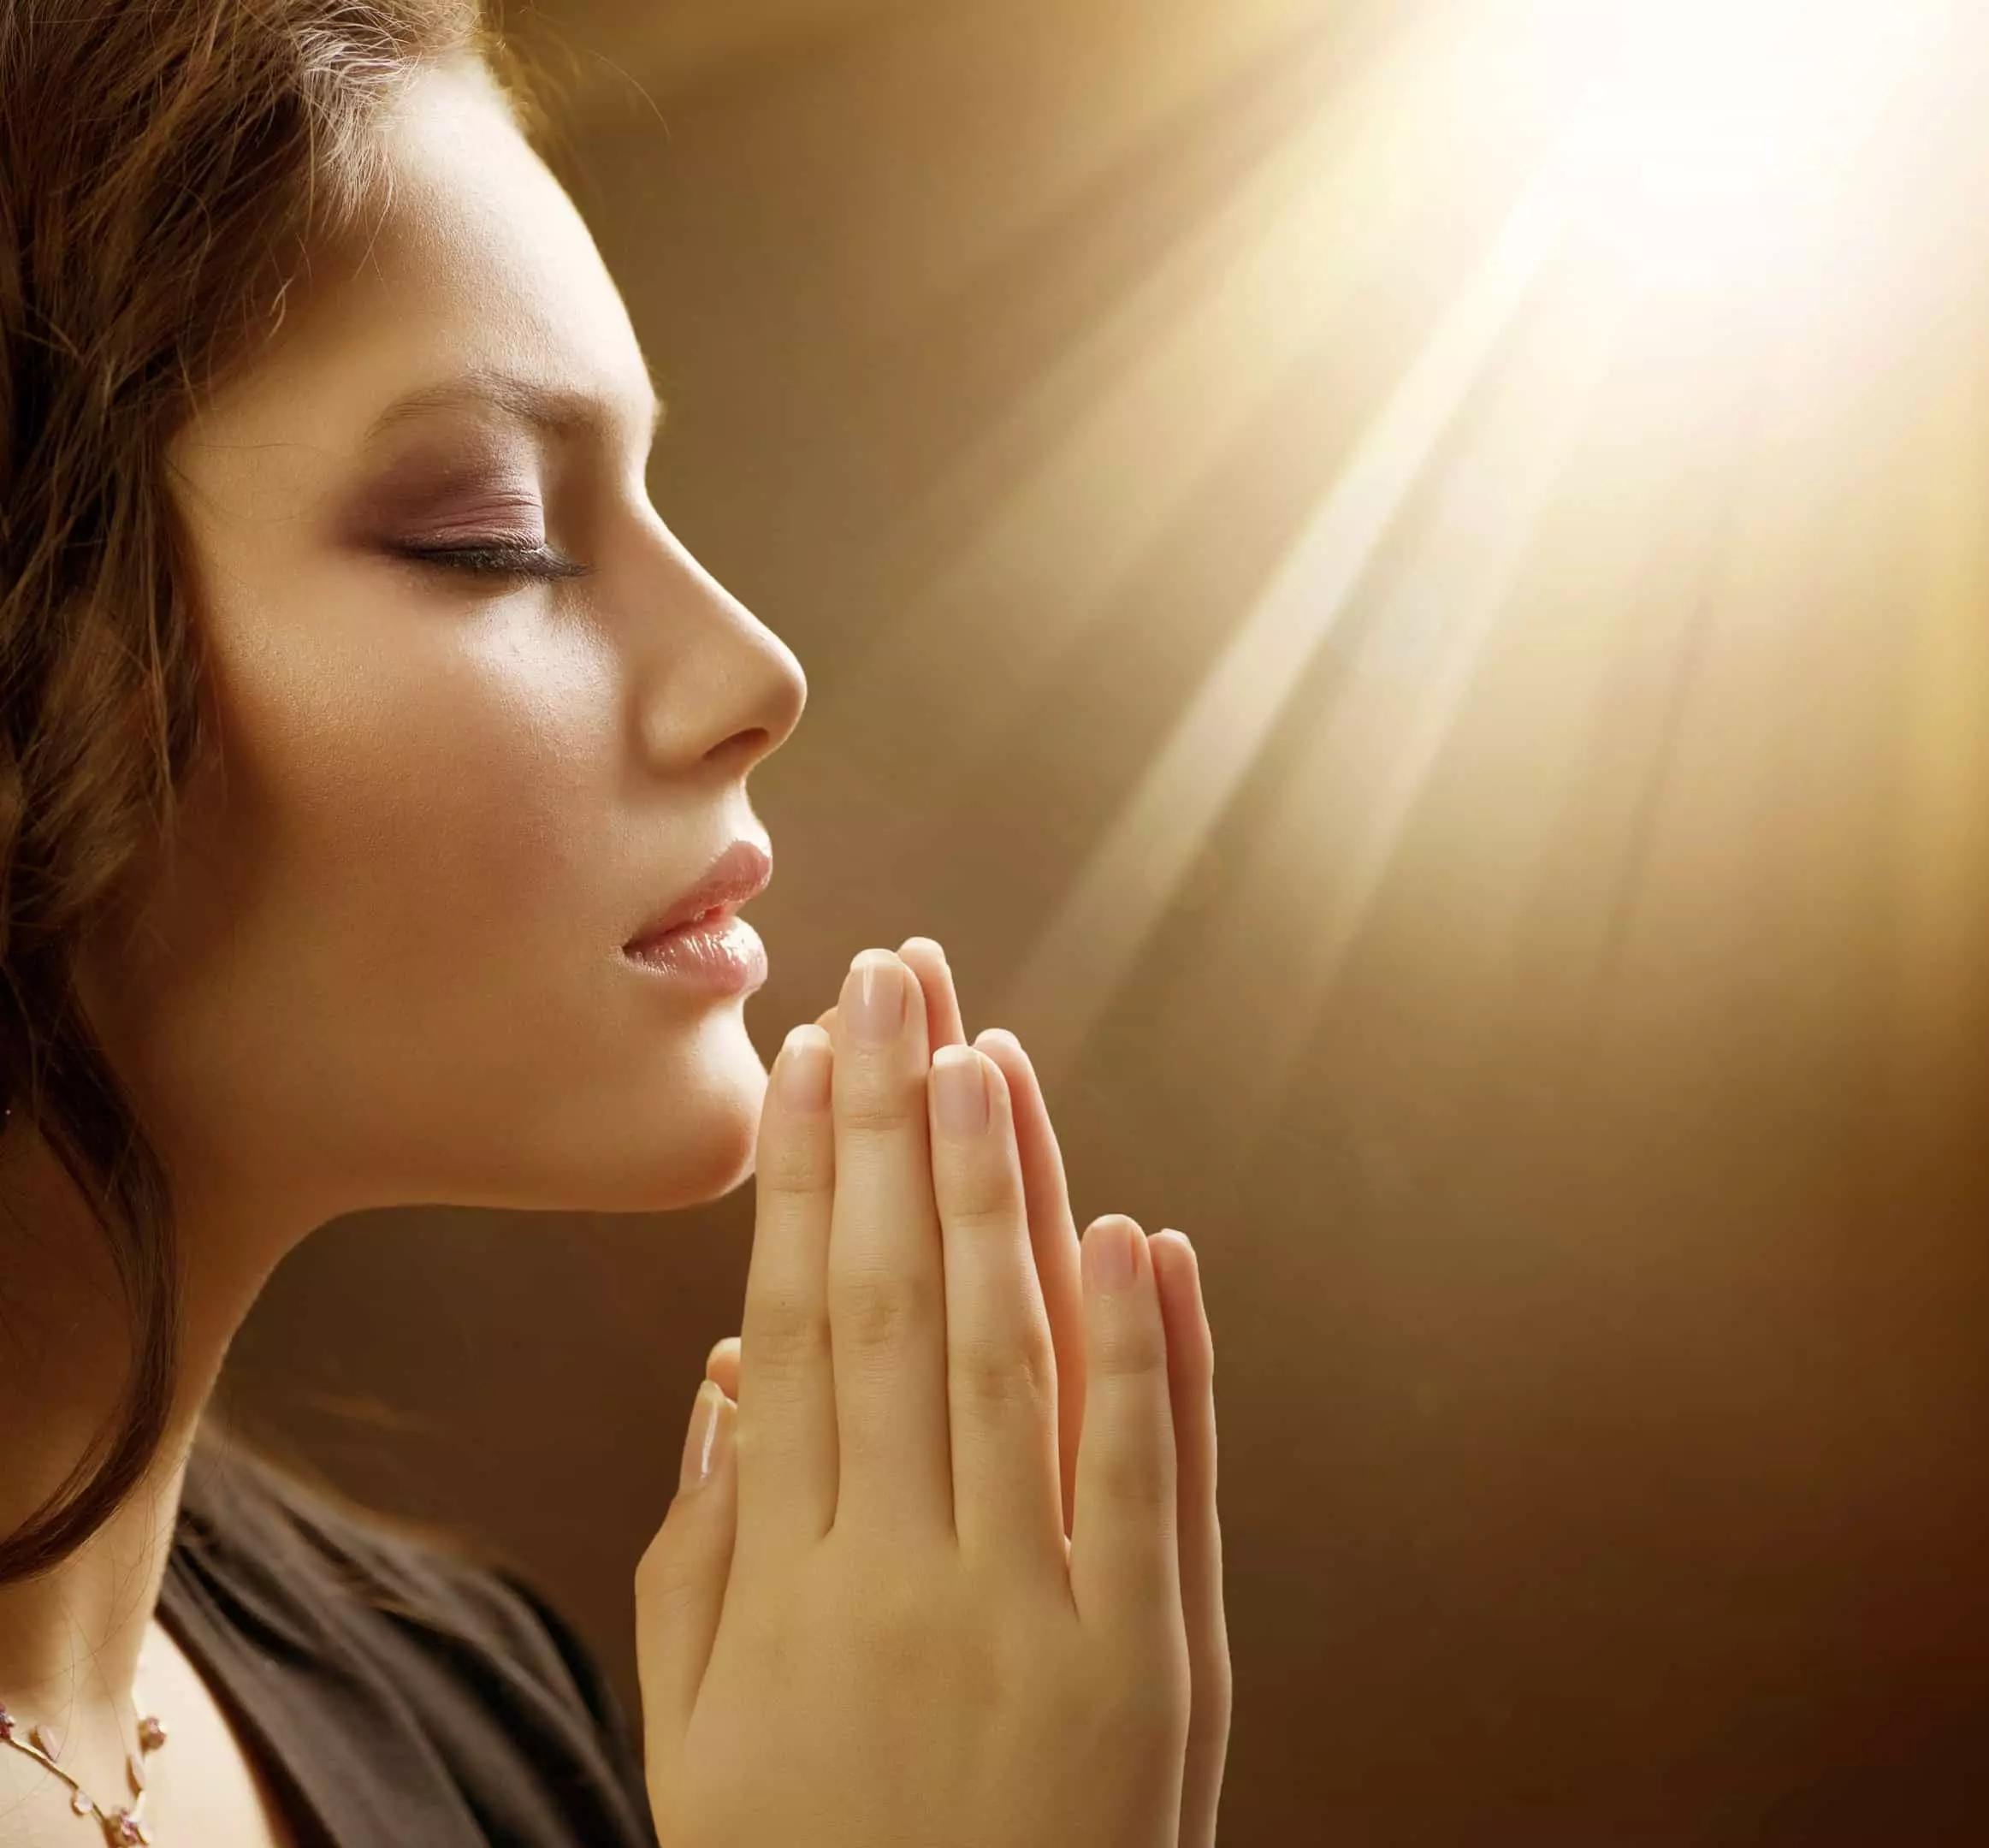 Girl prays